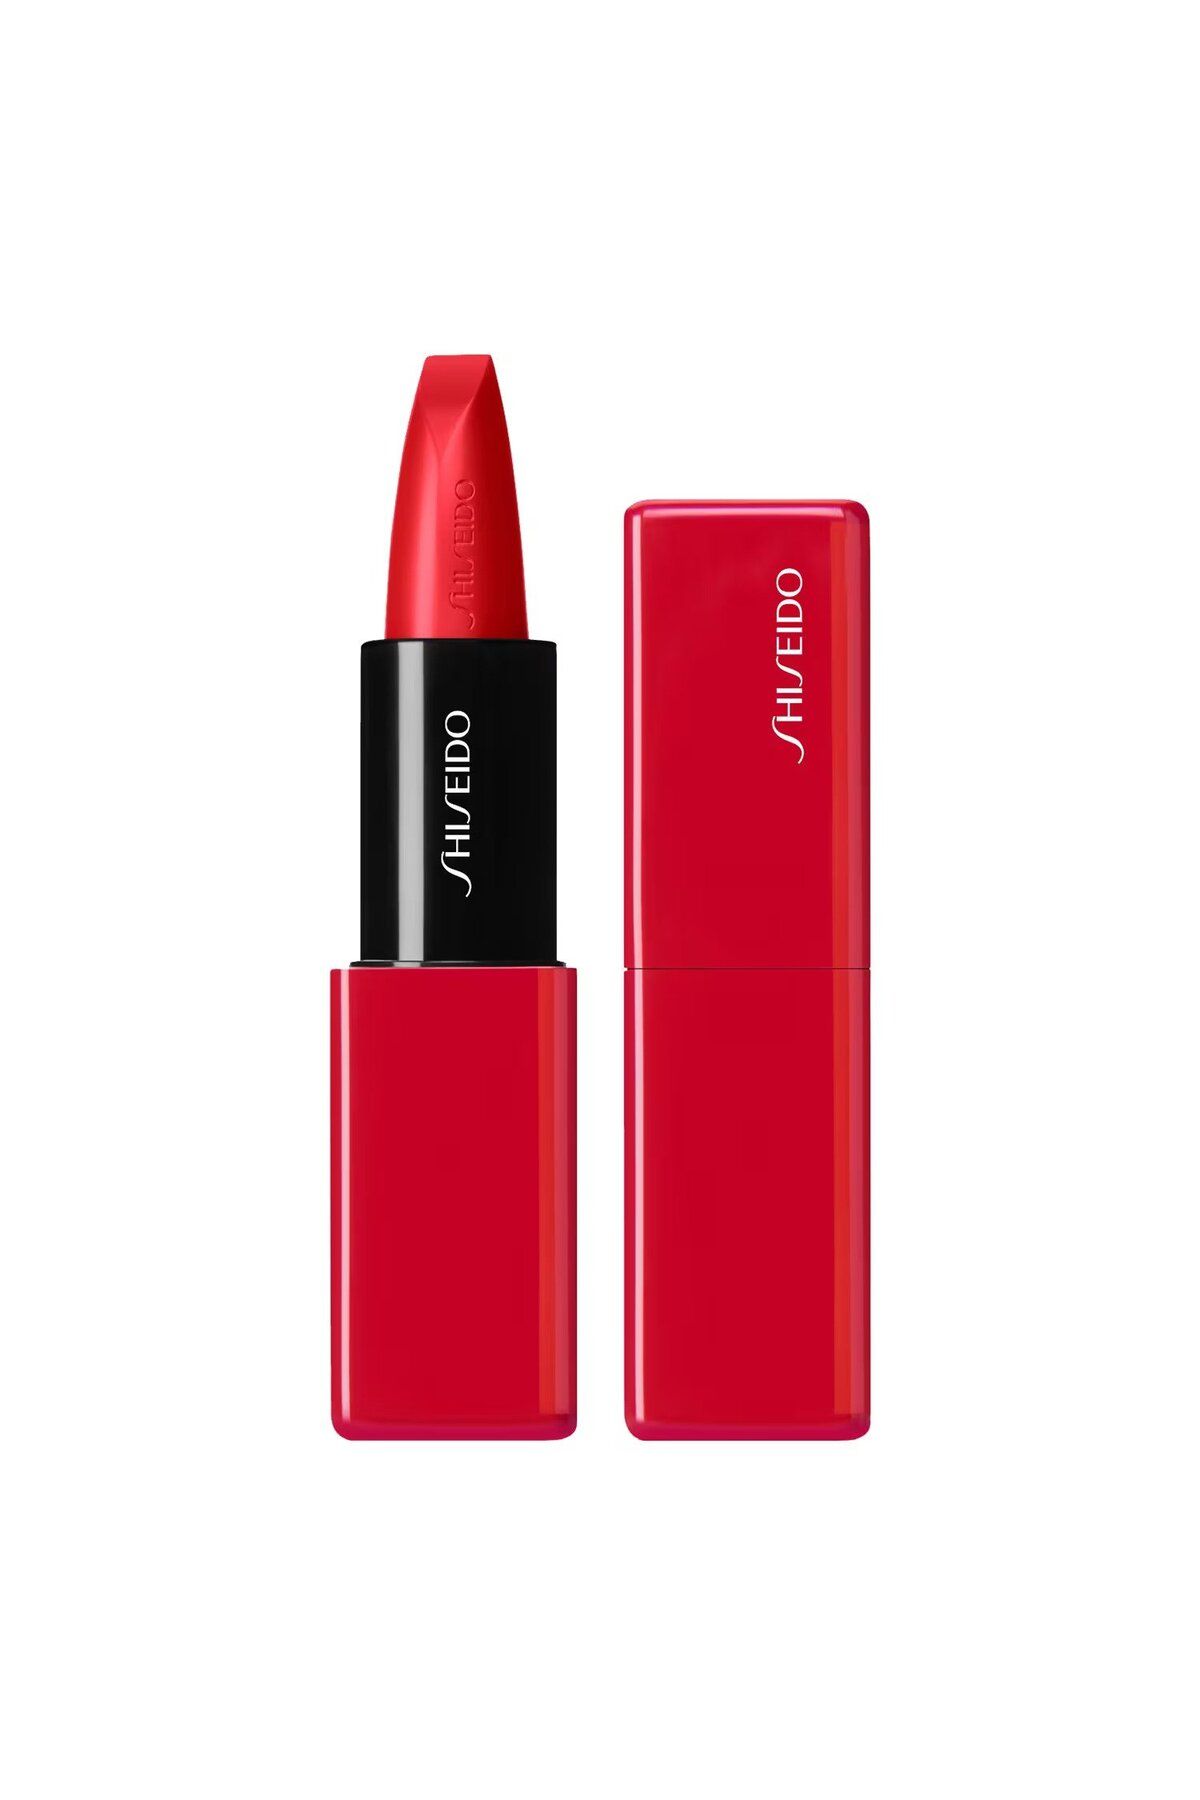 Shiseido Technosatin Gel Lipstick - 8 Saat Kalıcılık Ve 24 Saat Nemlendirme Sağlayan Saten Ruj 3,30 gr